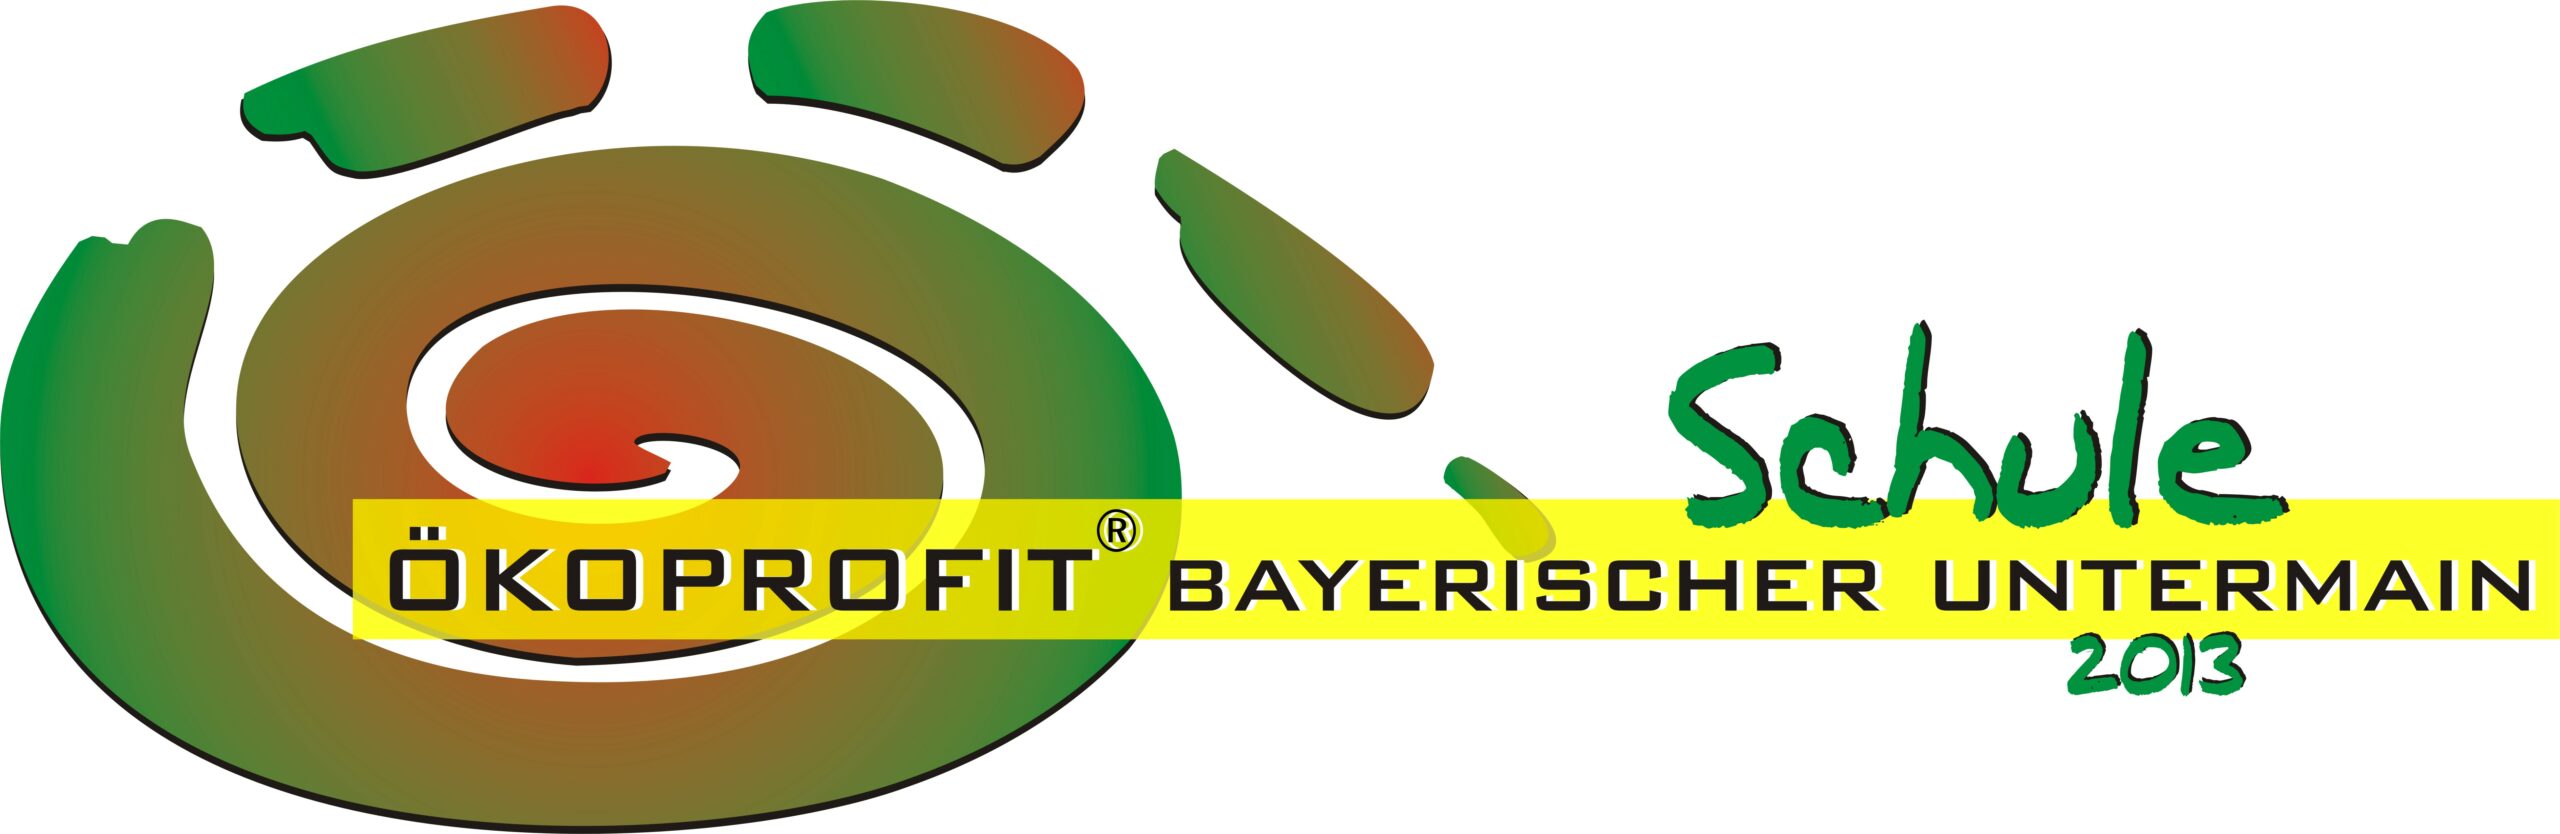 ÖP Logo Bayerischer Untermain Schule 2013